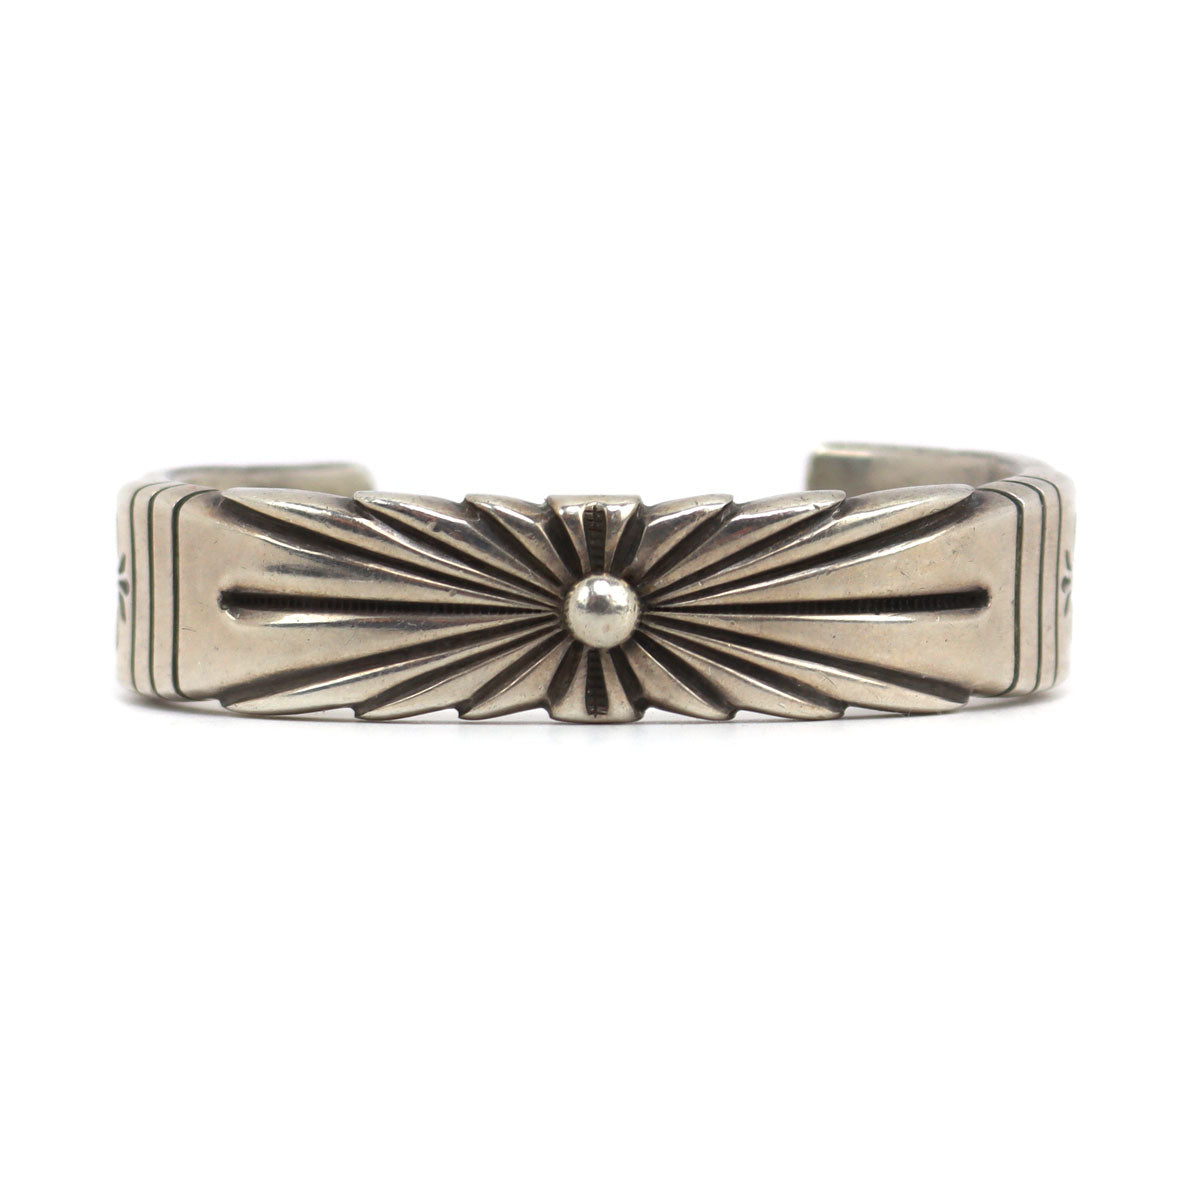 Wilson Jim - Navajo - Sterling Silver Bracelet c. 1990s, size 6.75 (J90378B-0523-002)